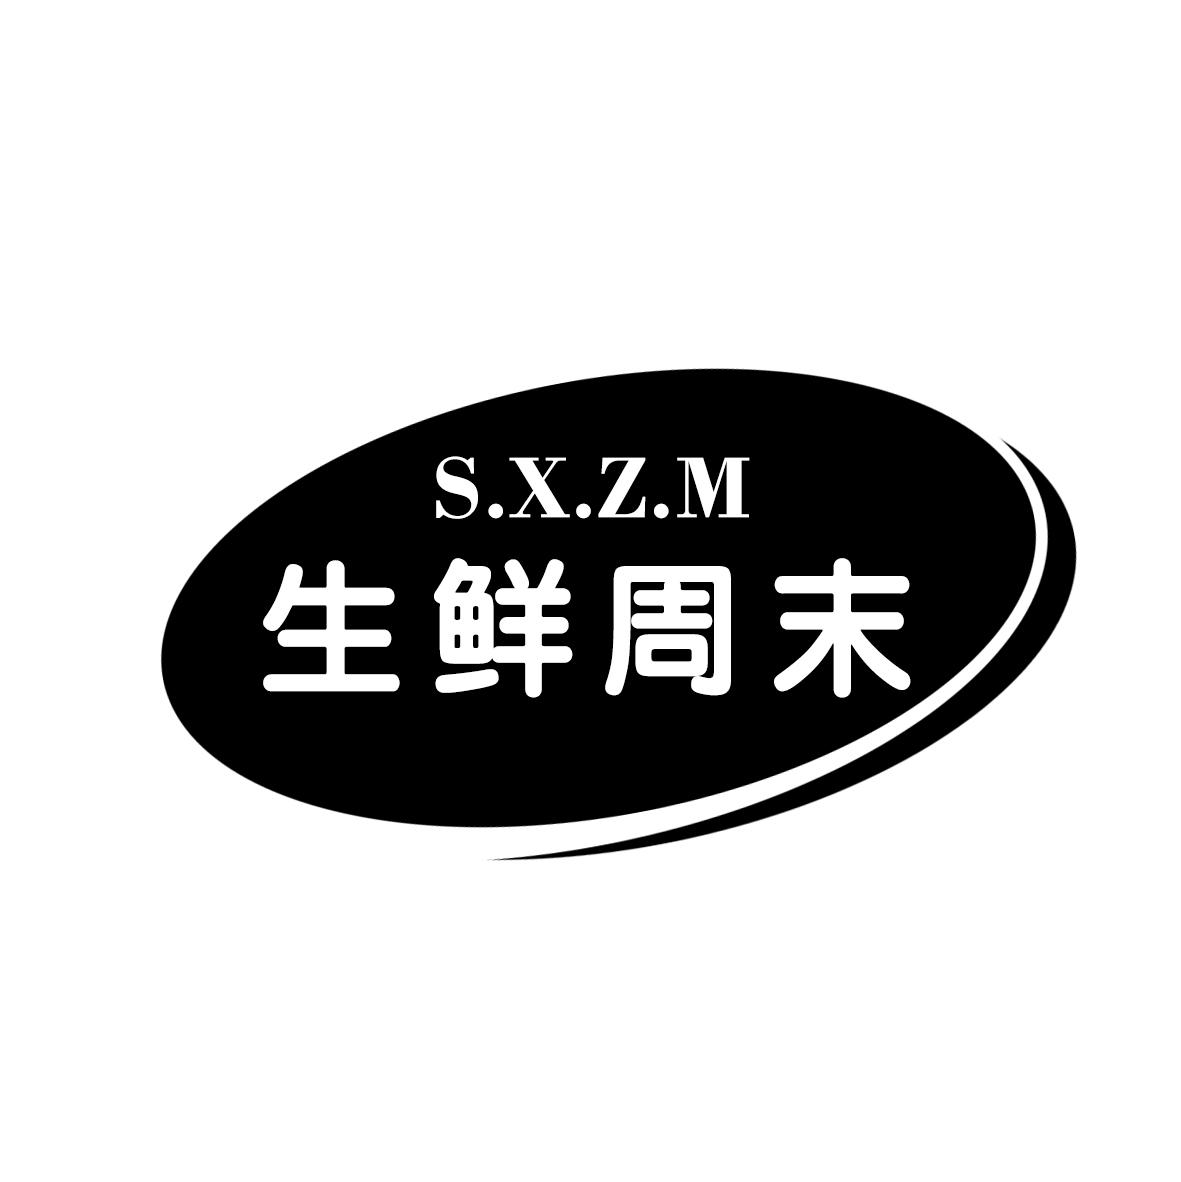 生鲜周末 S.X.Z.M